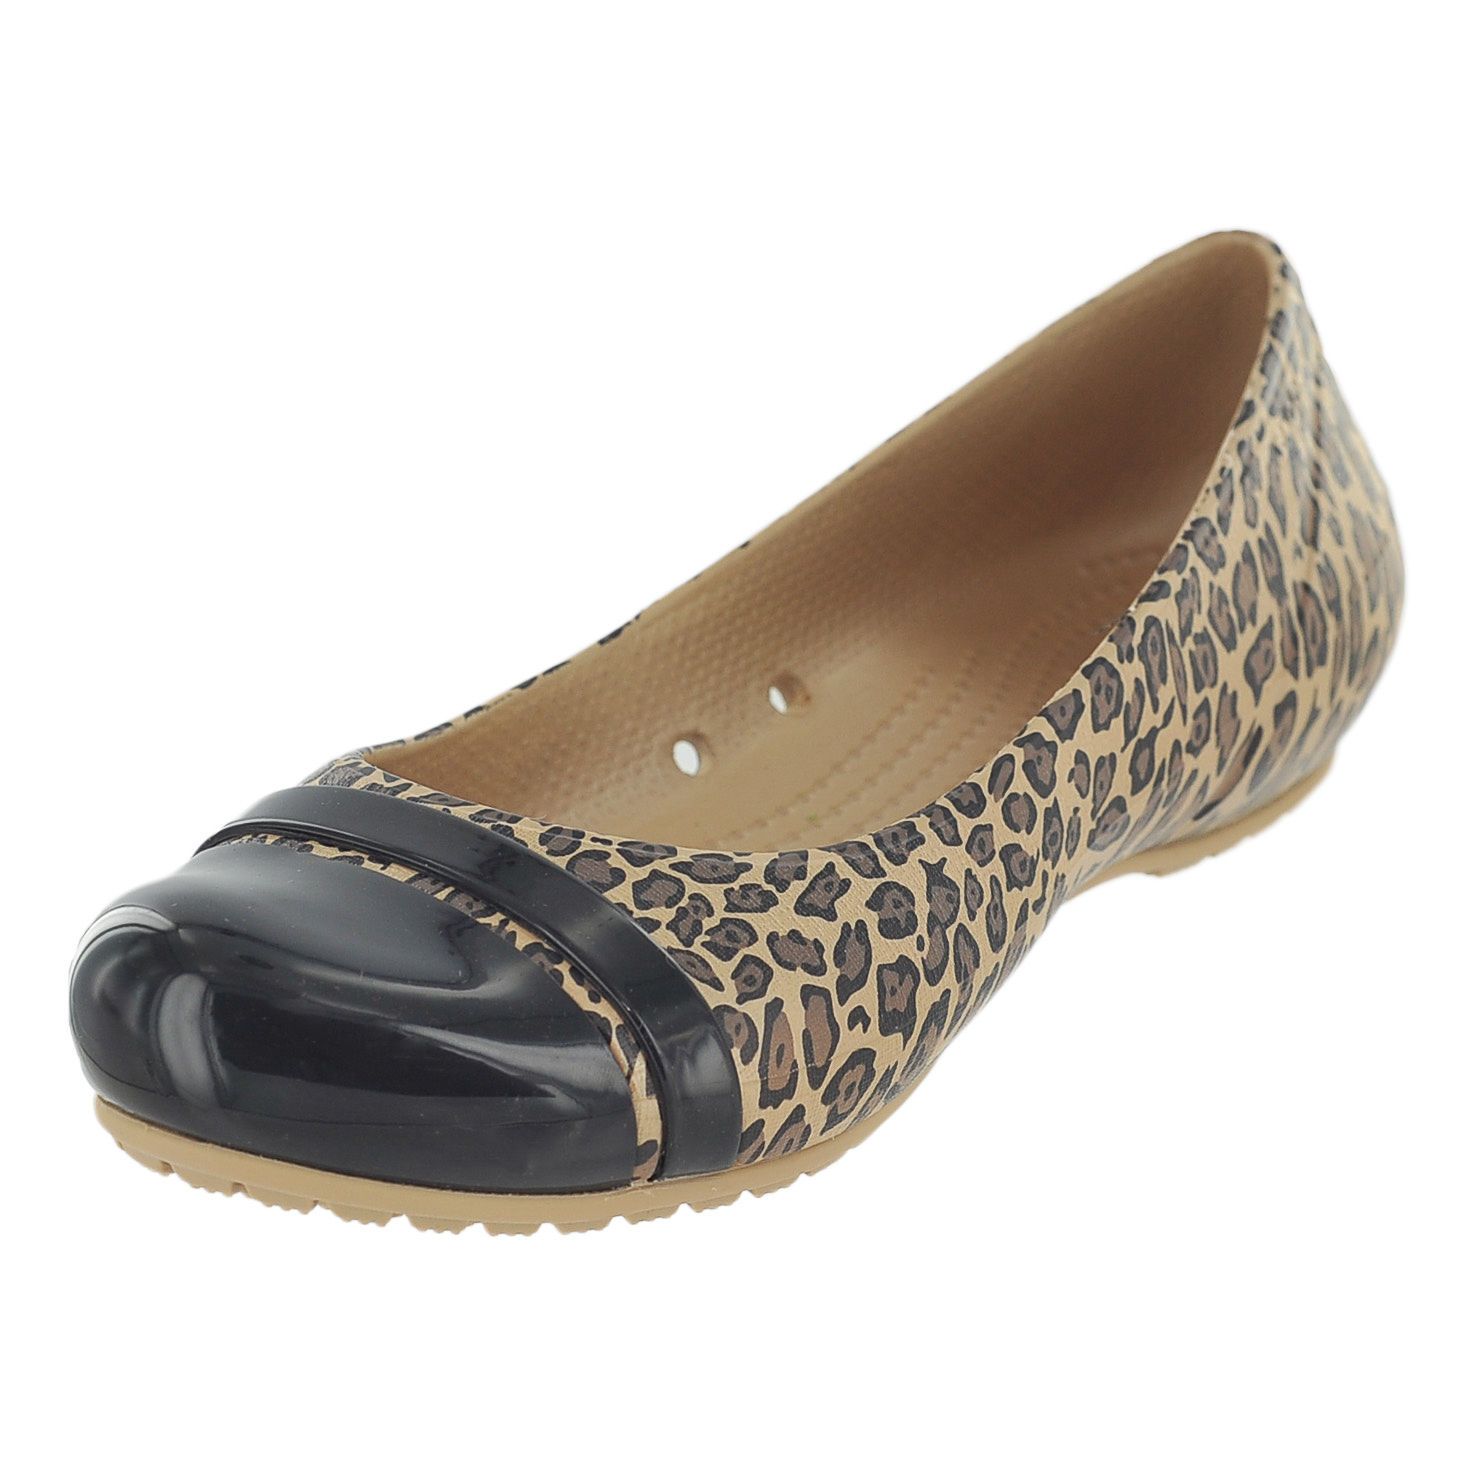  Crocs - Cap Toe Graphic Giày Búp Bê Flat Black/Gold Nữ 